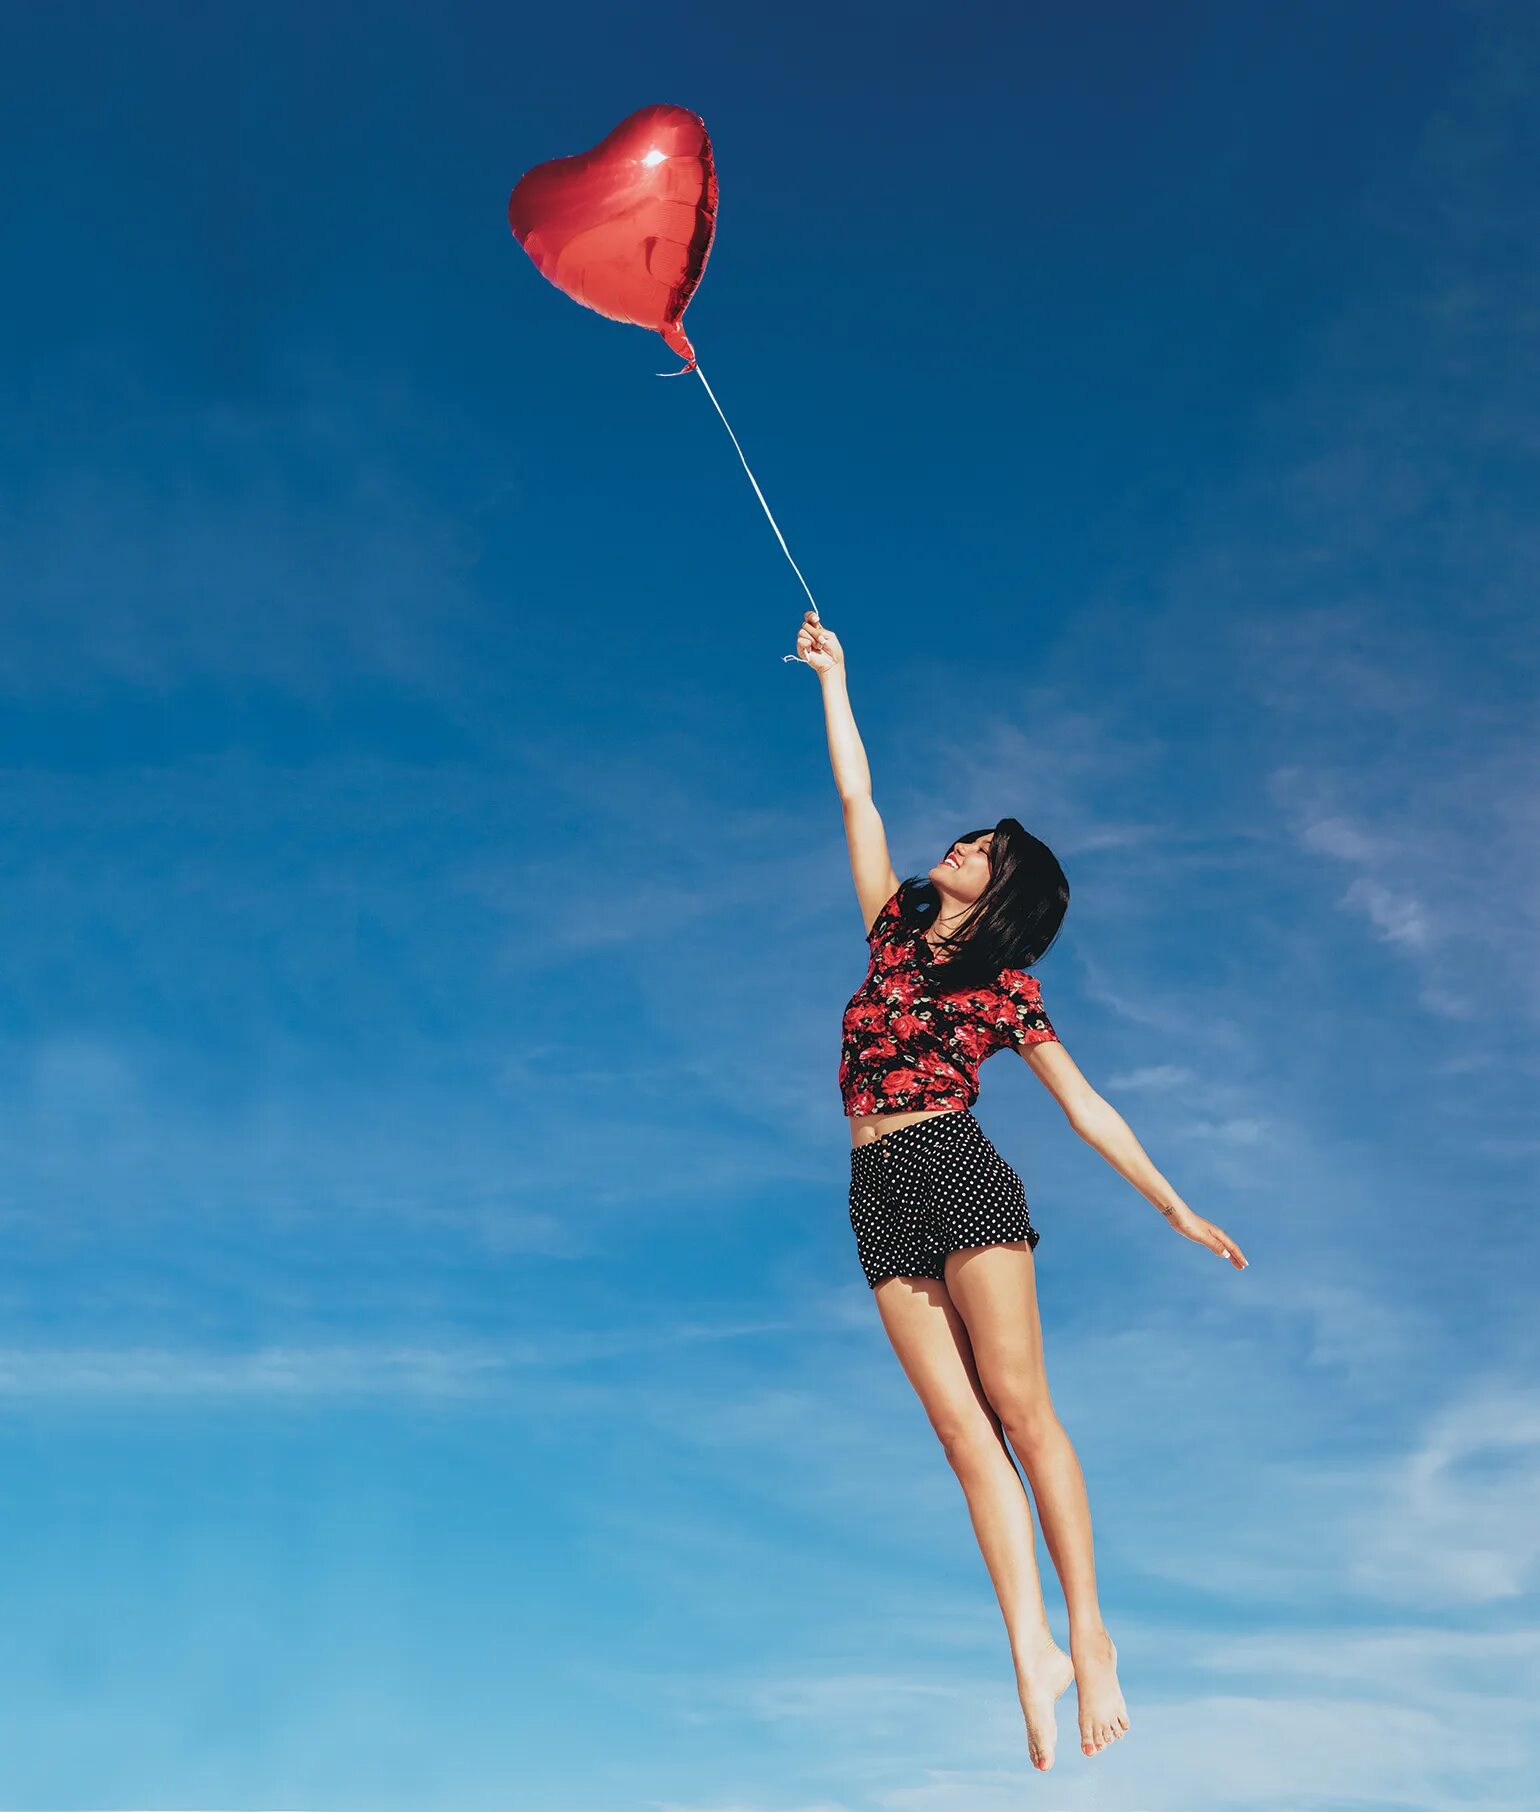 Флай Вумен. Flying. Girl Flying Balloon. Flying Rovana.